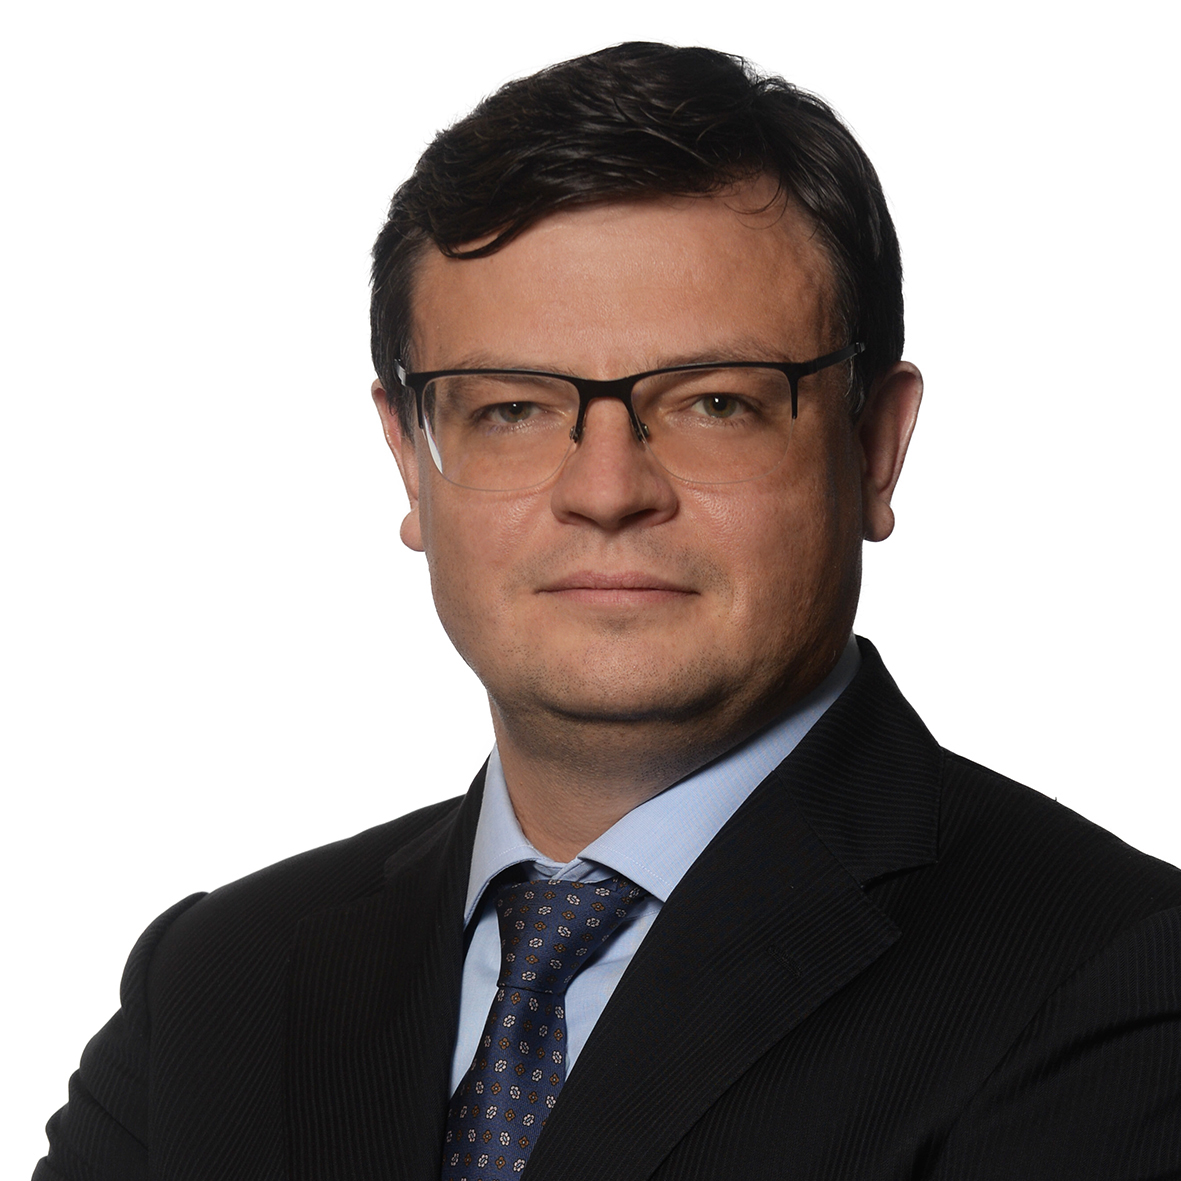 Lietuvos kovai su COVID-19 investuotojas Ž. Mecelis skiria 250 tūkst. eurų